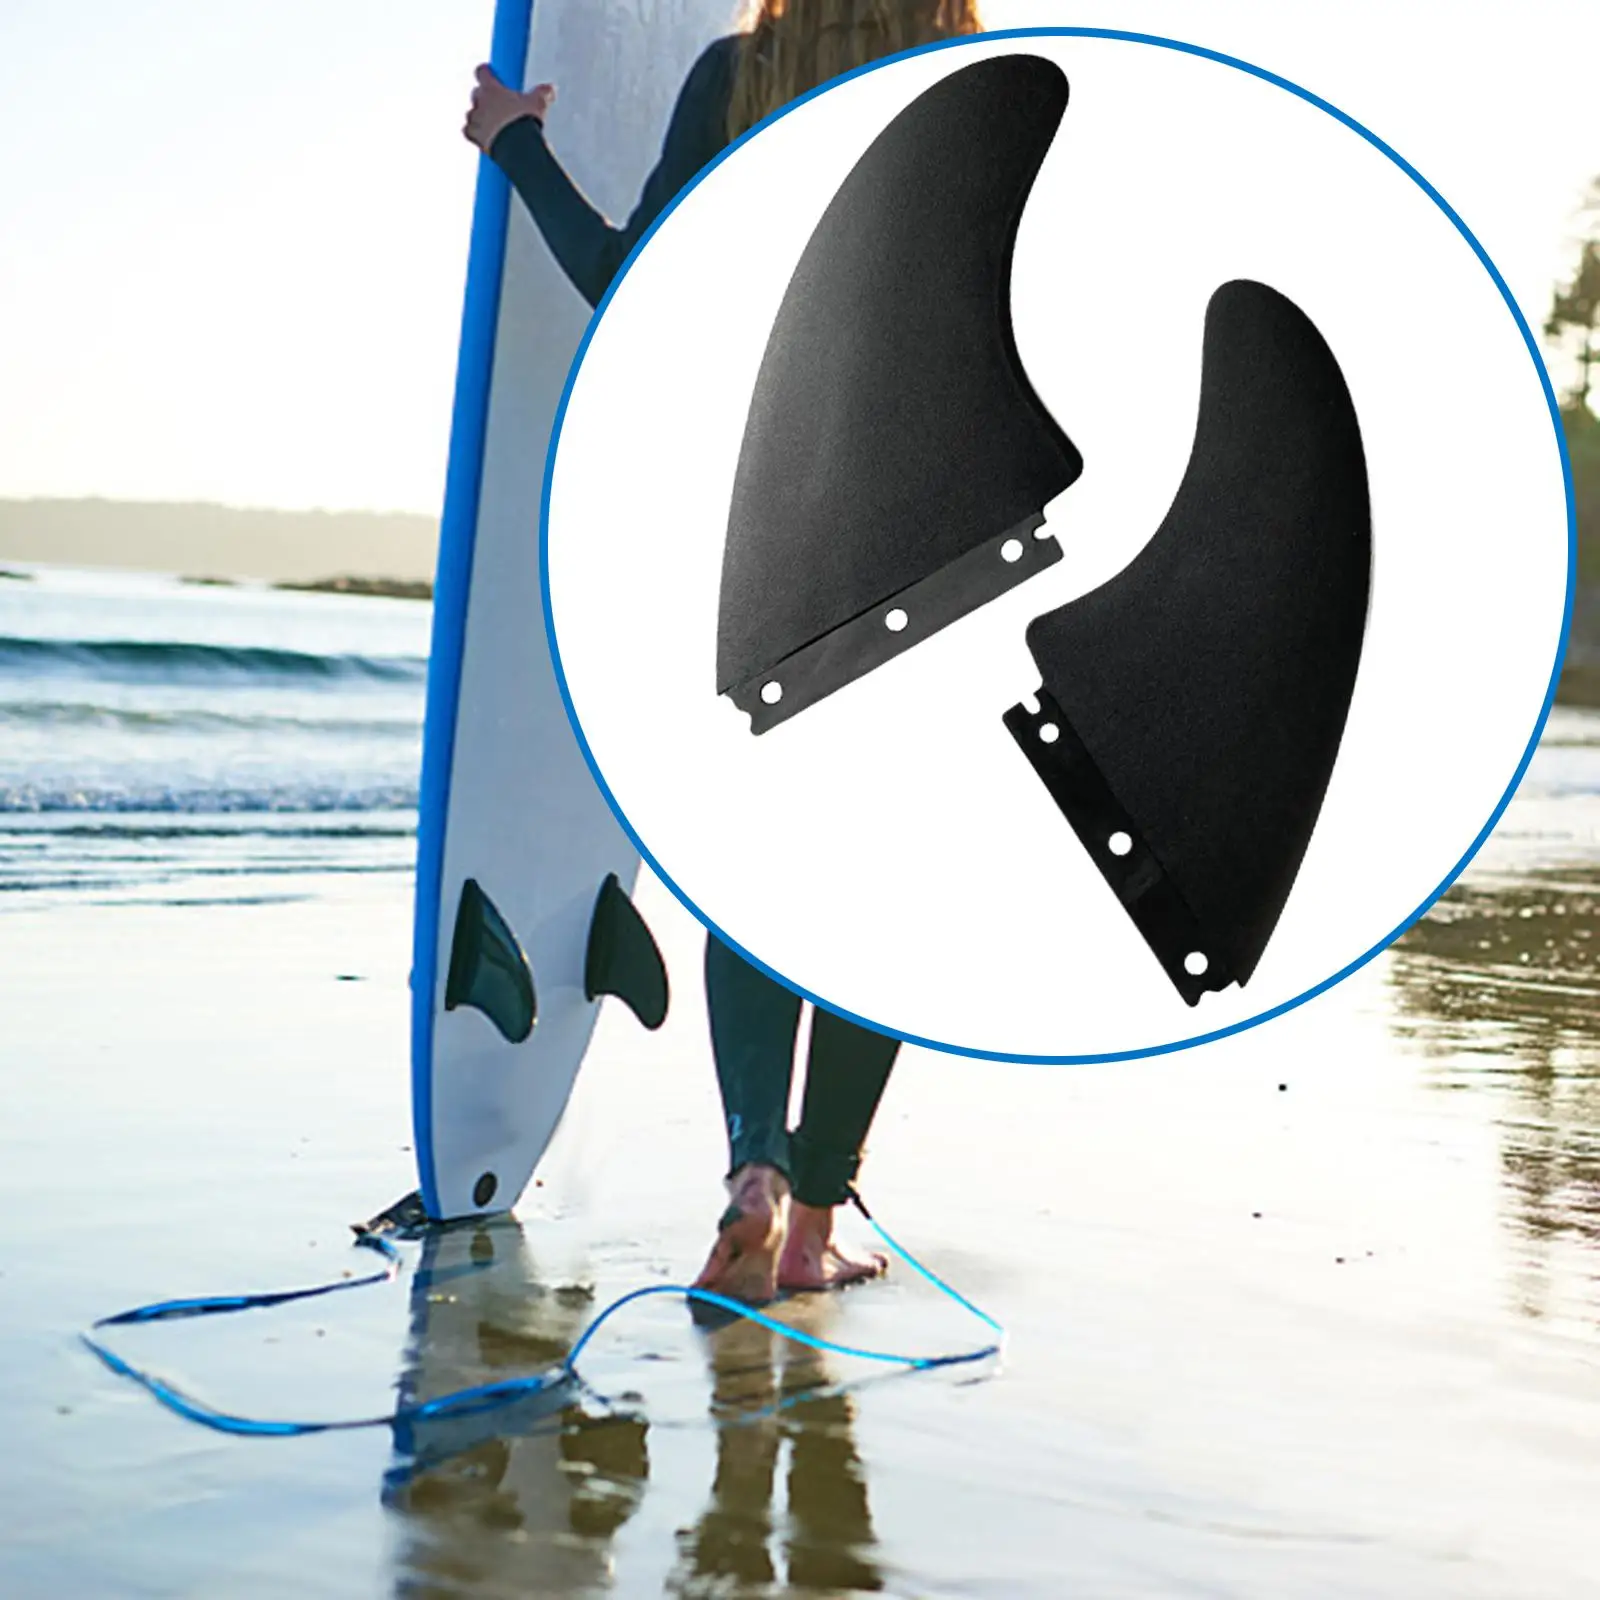 2Pcs Surfboard Fins Surf Board Tail Rudder for Longboard Canoe Accessory